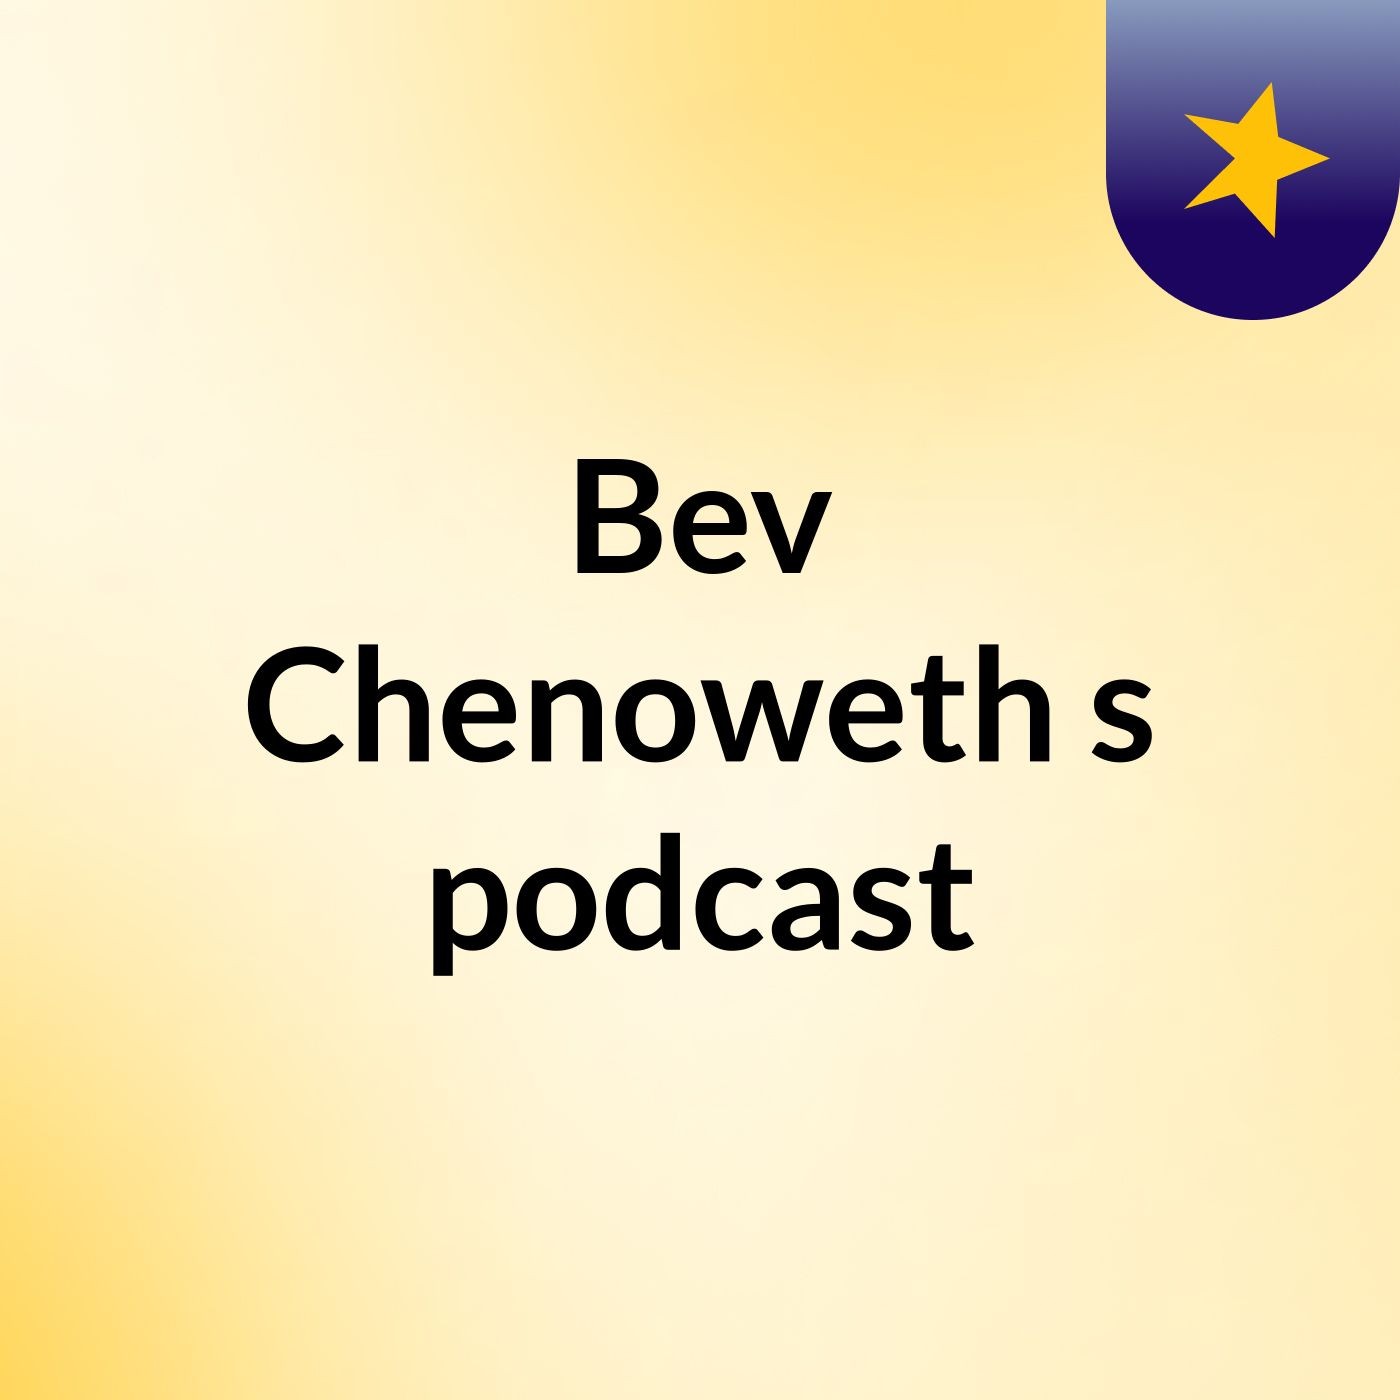 Episode 4 - Bev Chenoweth's podcast